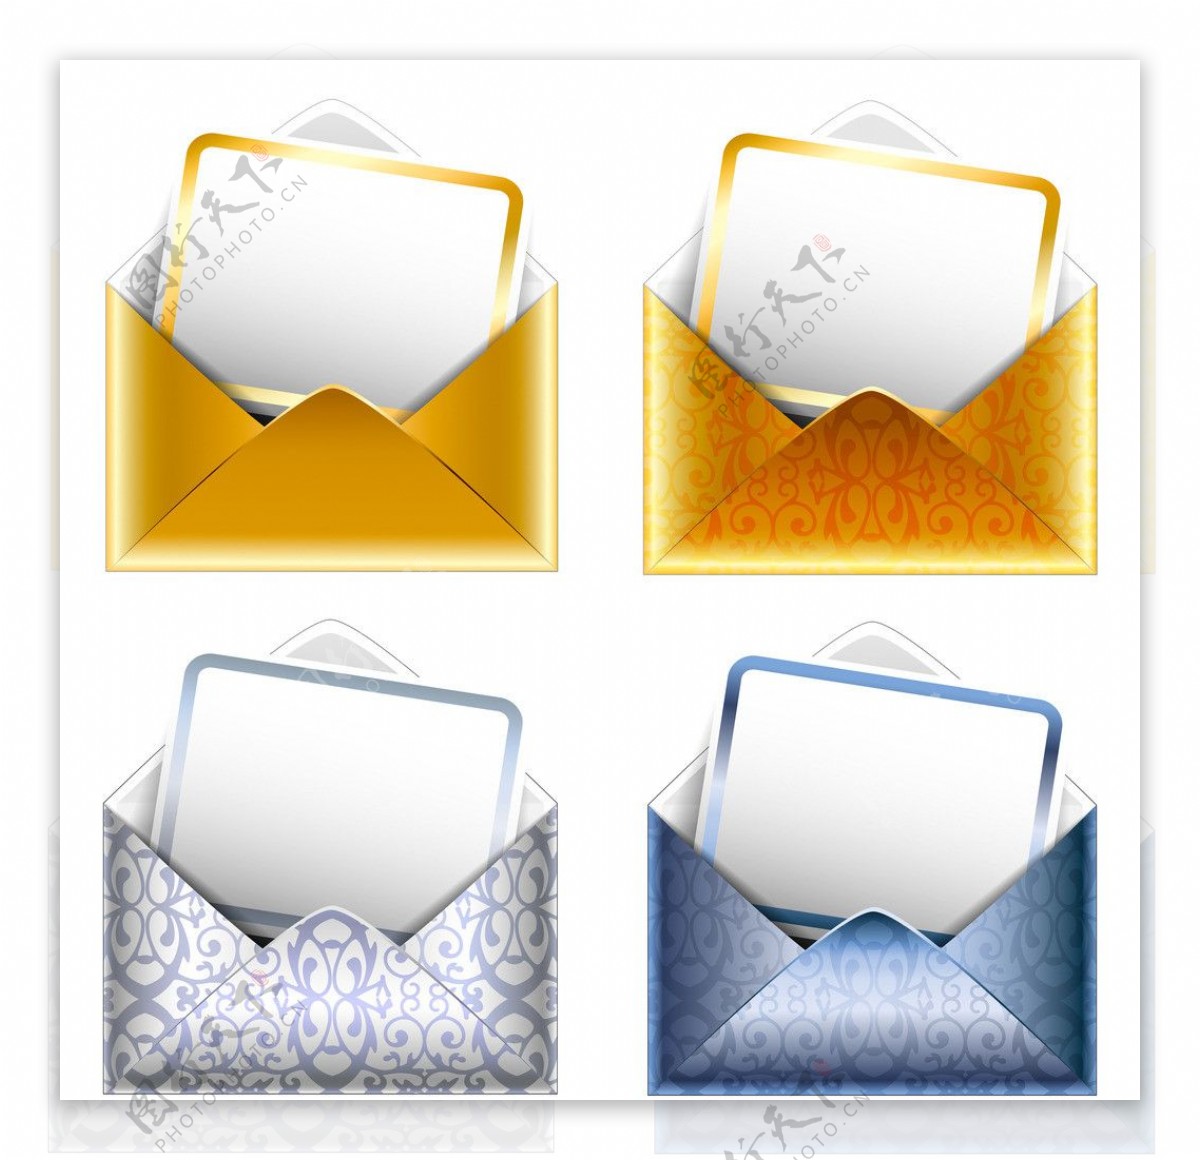 自建企业邮箱，如何有效防范垃圾邮件